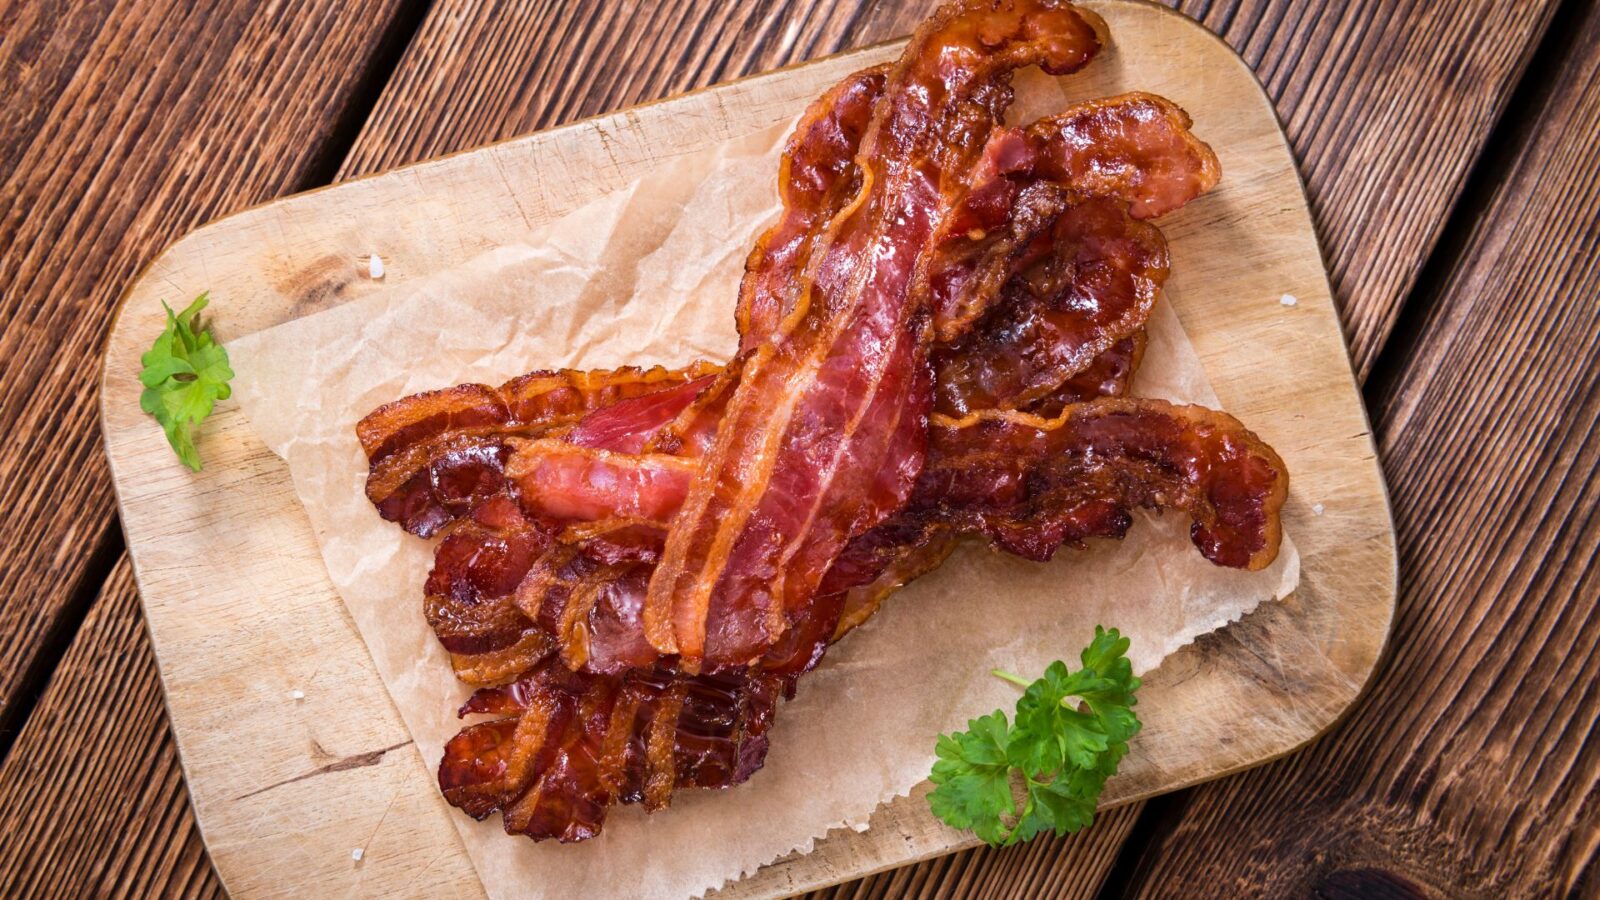 Como fazer bacon caseiro